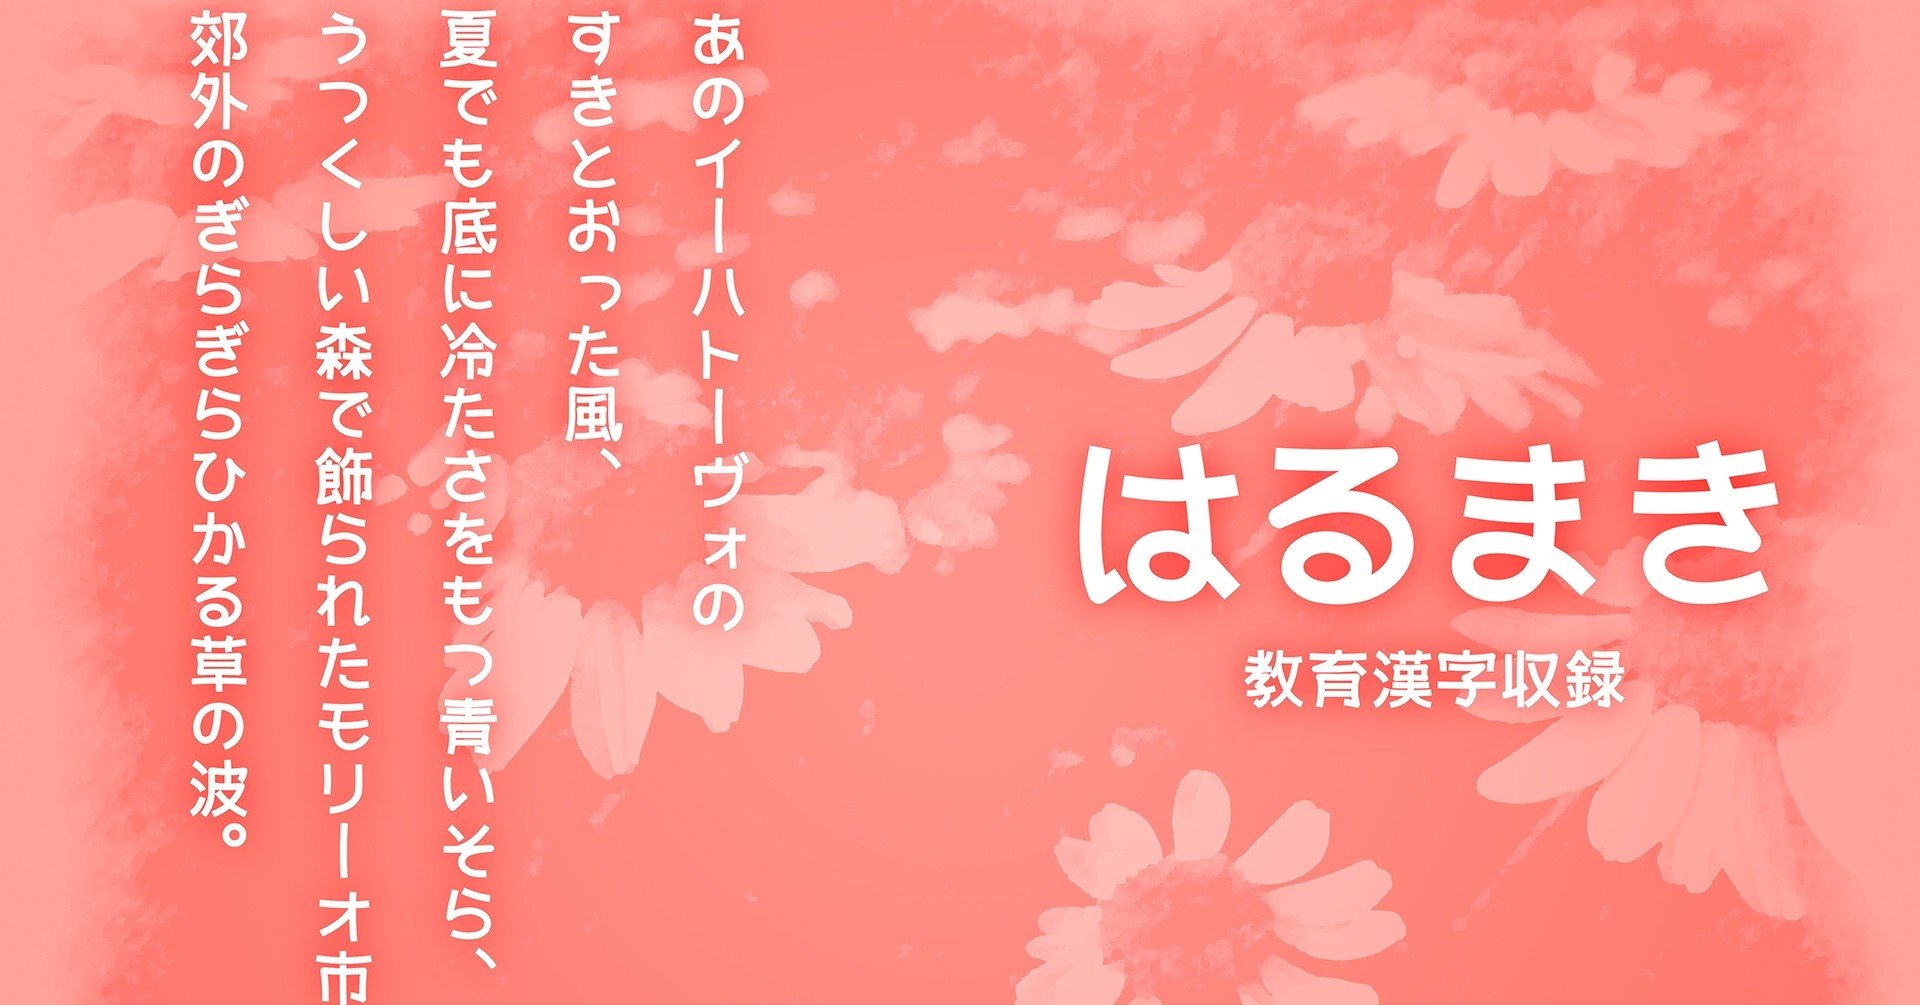 日本語書体 はるまき 無料 個人商用可 漢字リク有 Atsumu Note